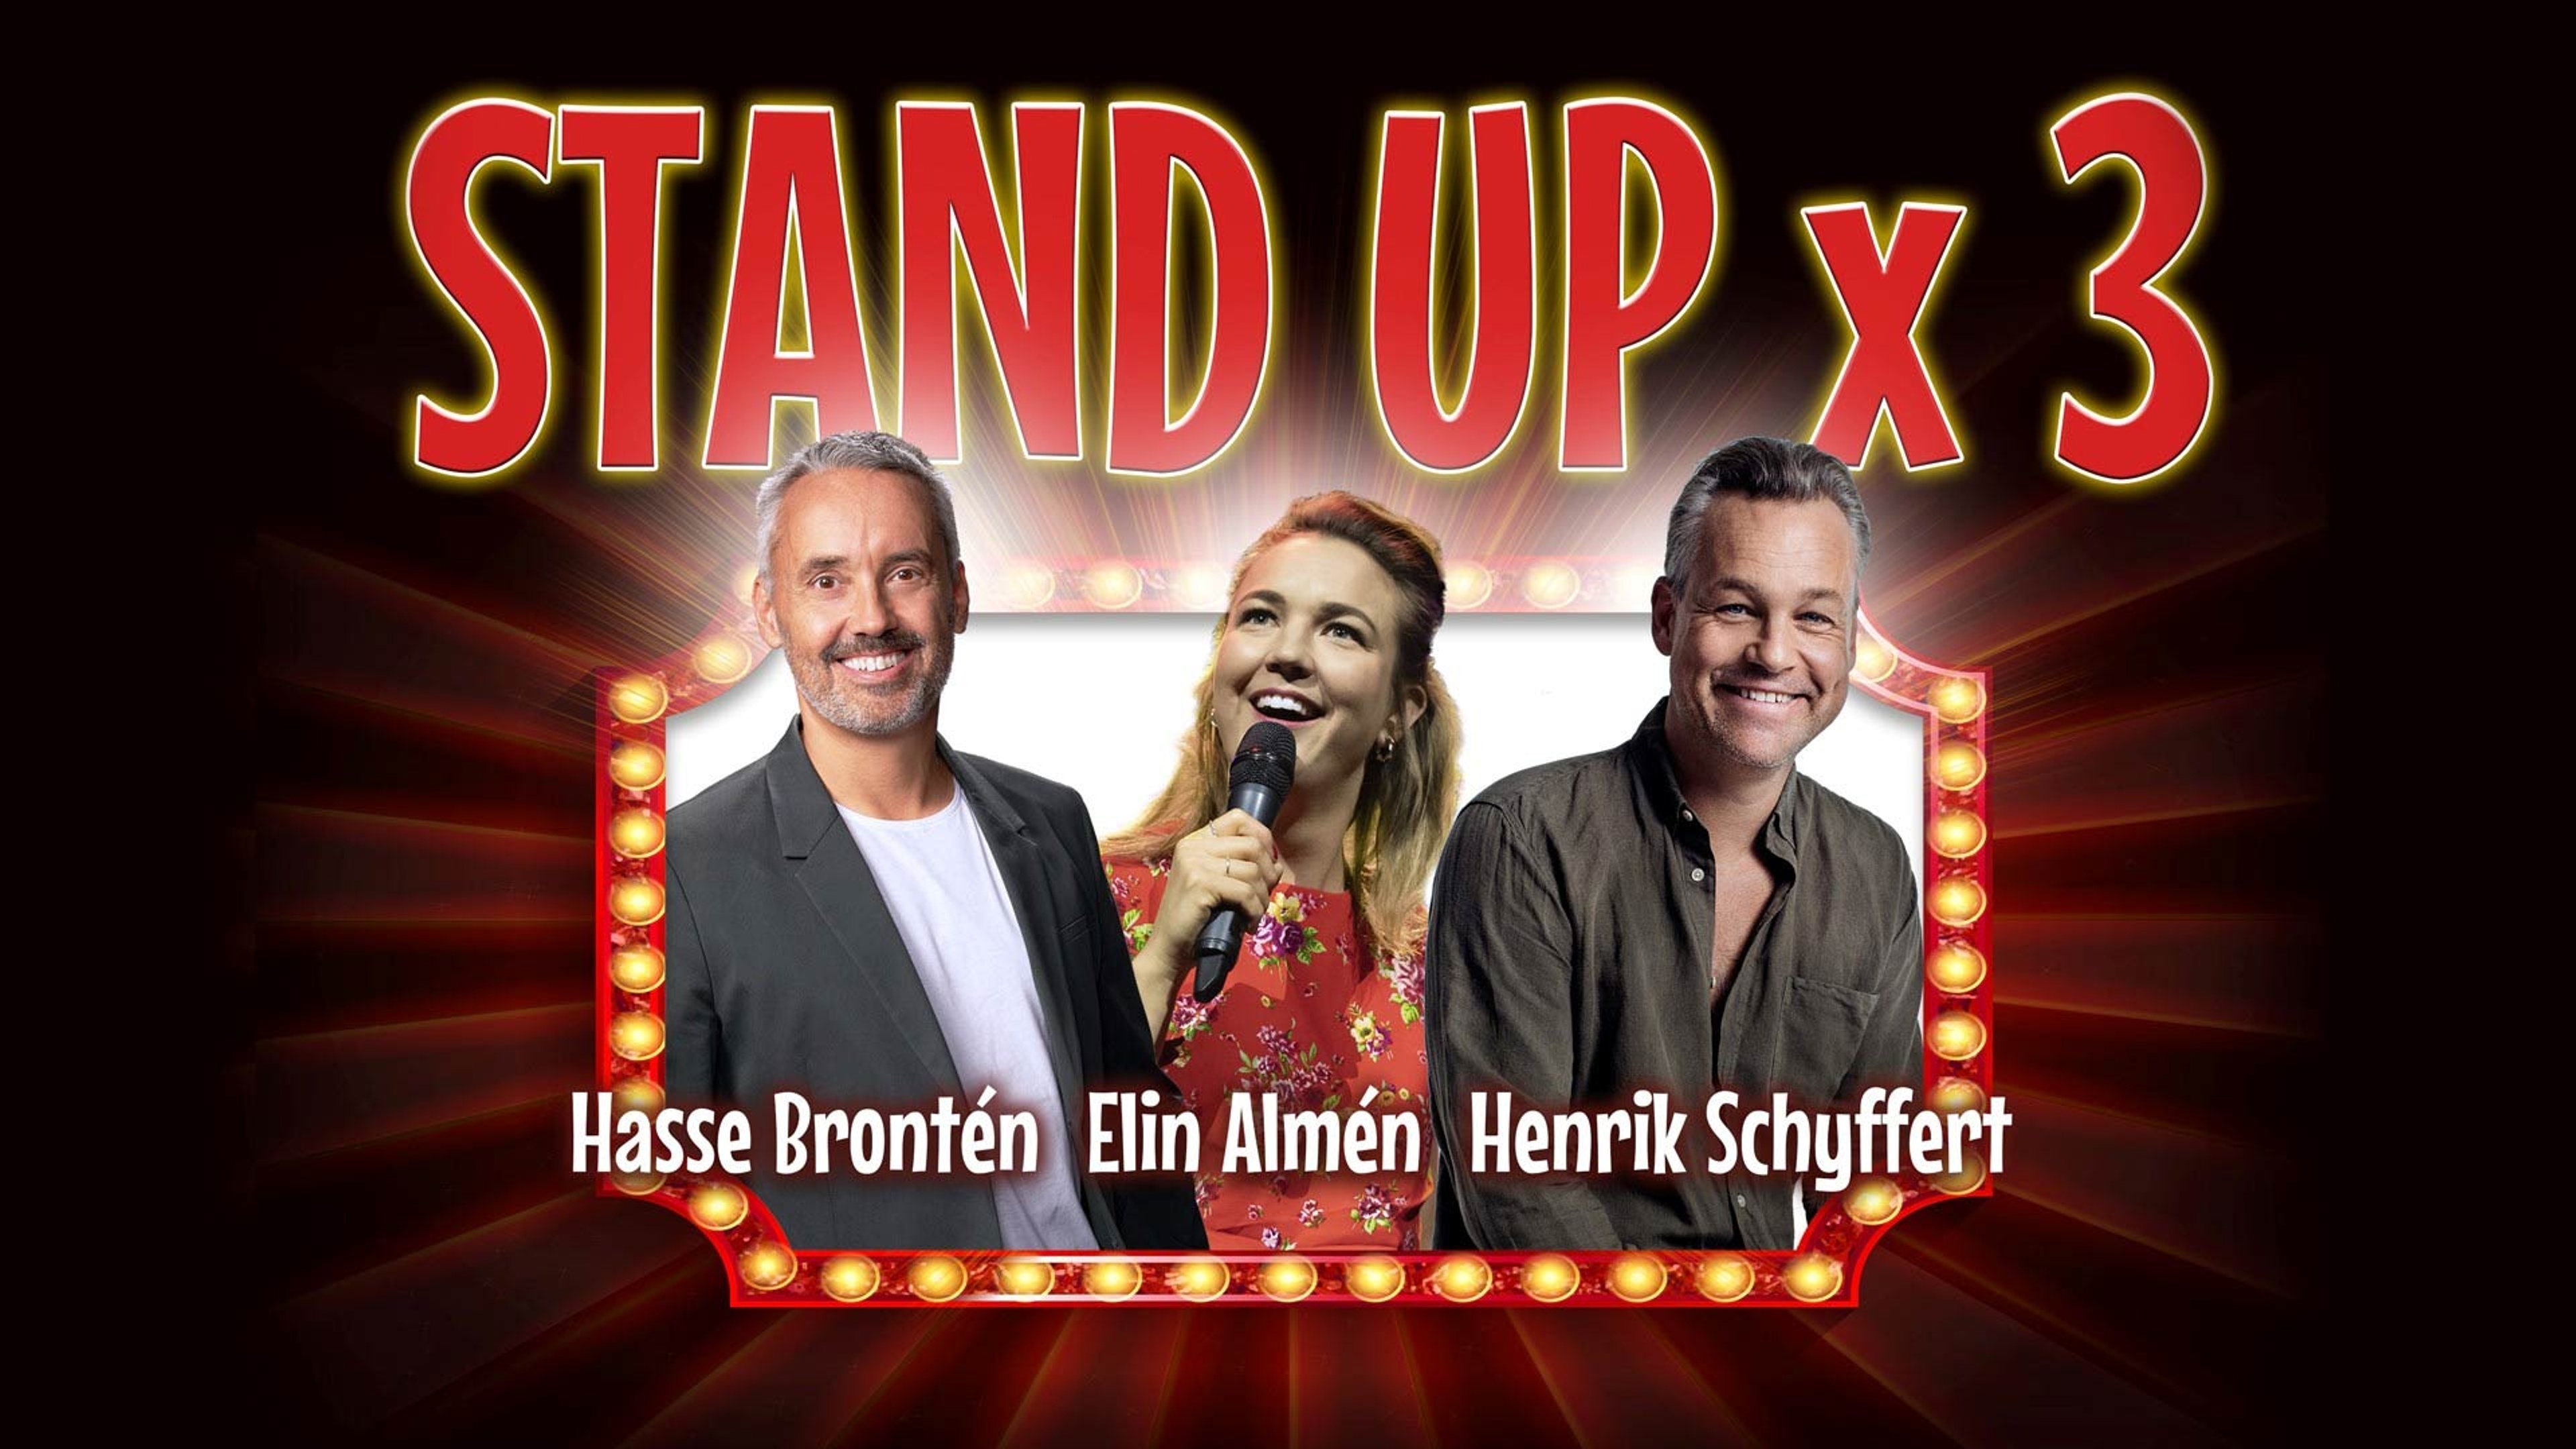 Hasse Brontén, Elin Almén och Henrik Schyffert mot en mörkröd bakgrund. Text: Stand up x 3.